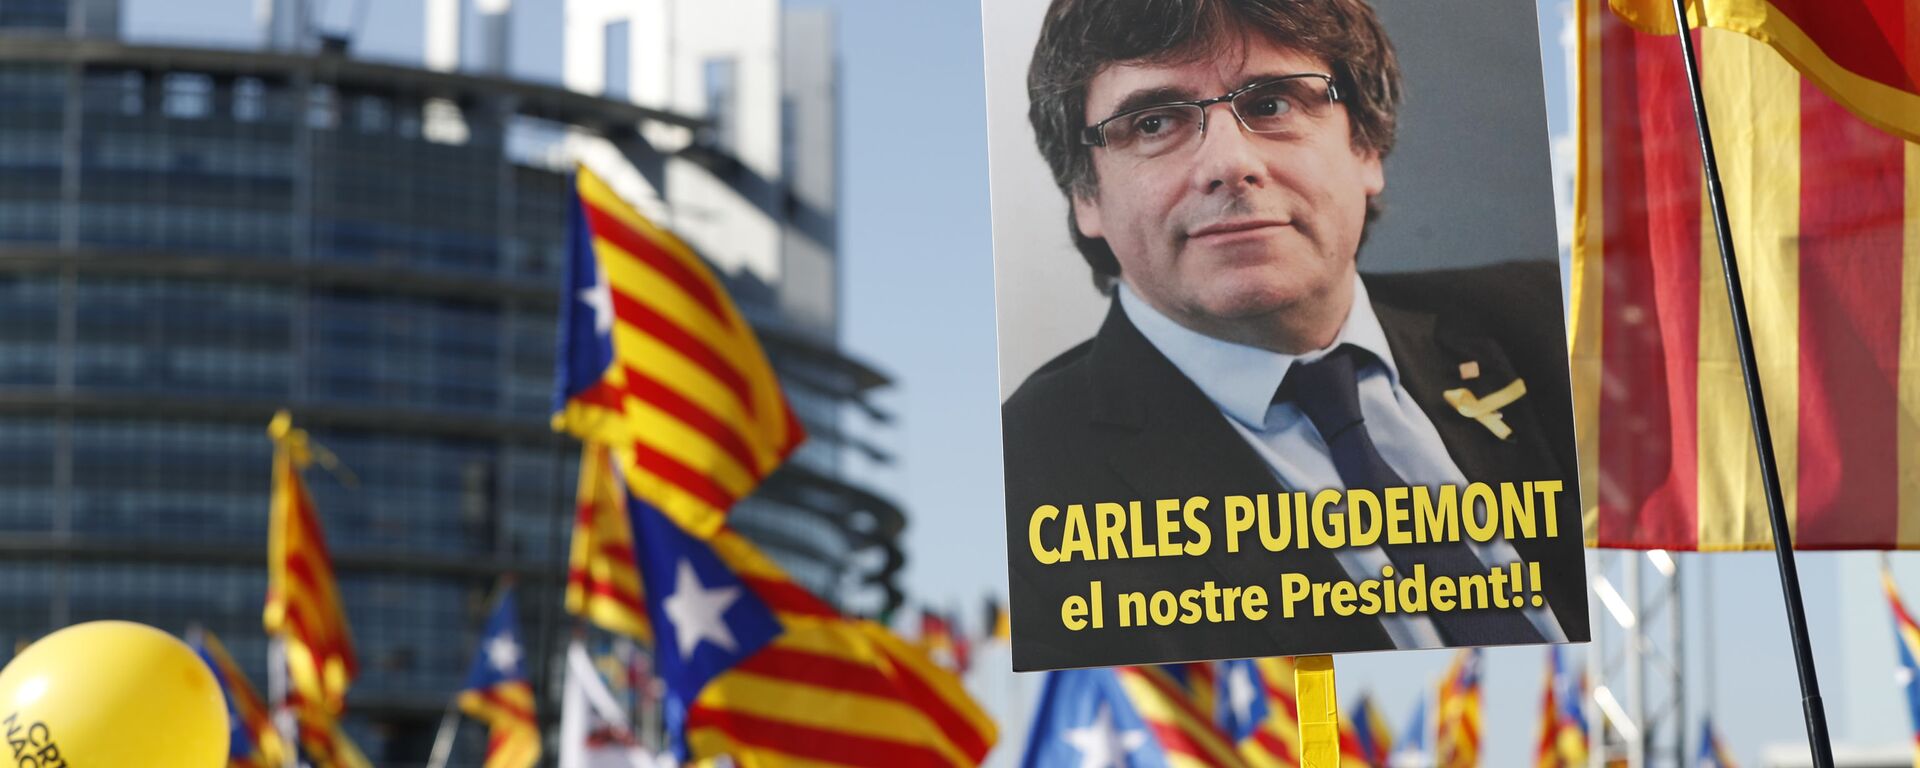 Marcha de protesta al frente del Parlamento Europeo (Estrasburgo, Francia) en contra de la persecución del líder independentista catalán, Carles Puigdemont, el 2 de julio de 2019 - Sputnik Mundo, 1920, 25.07.2023